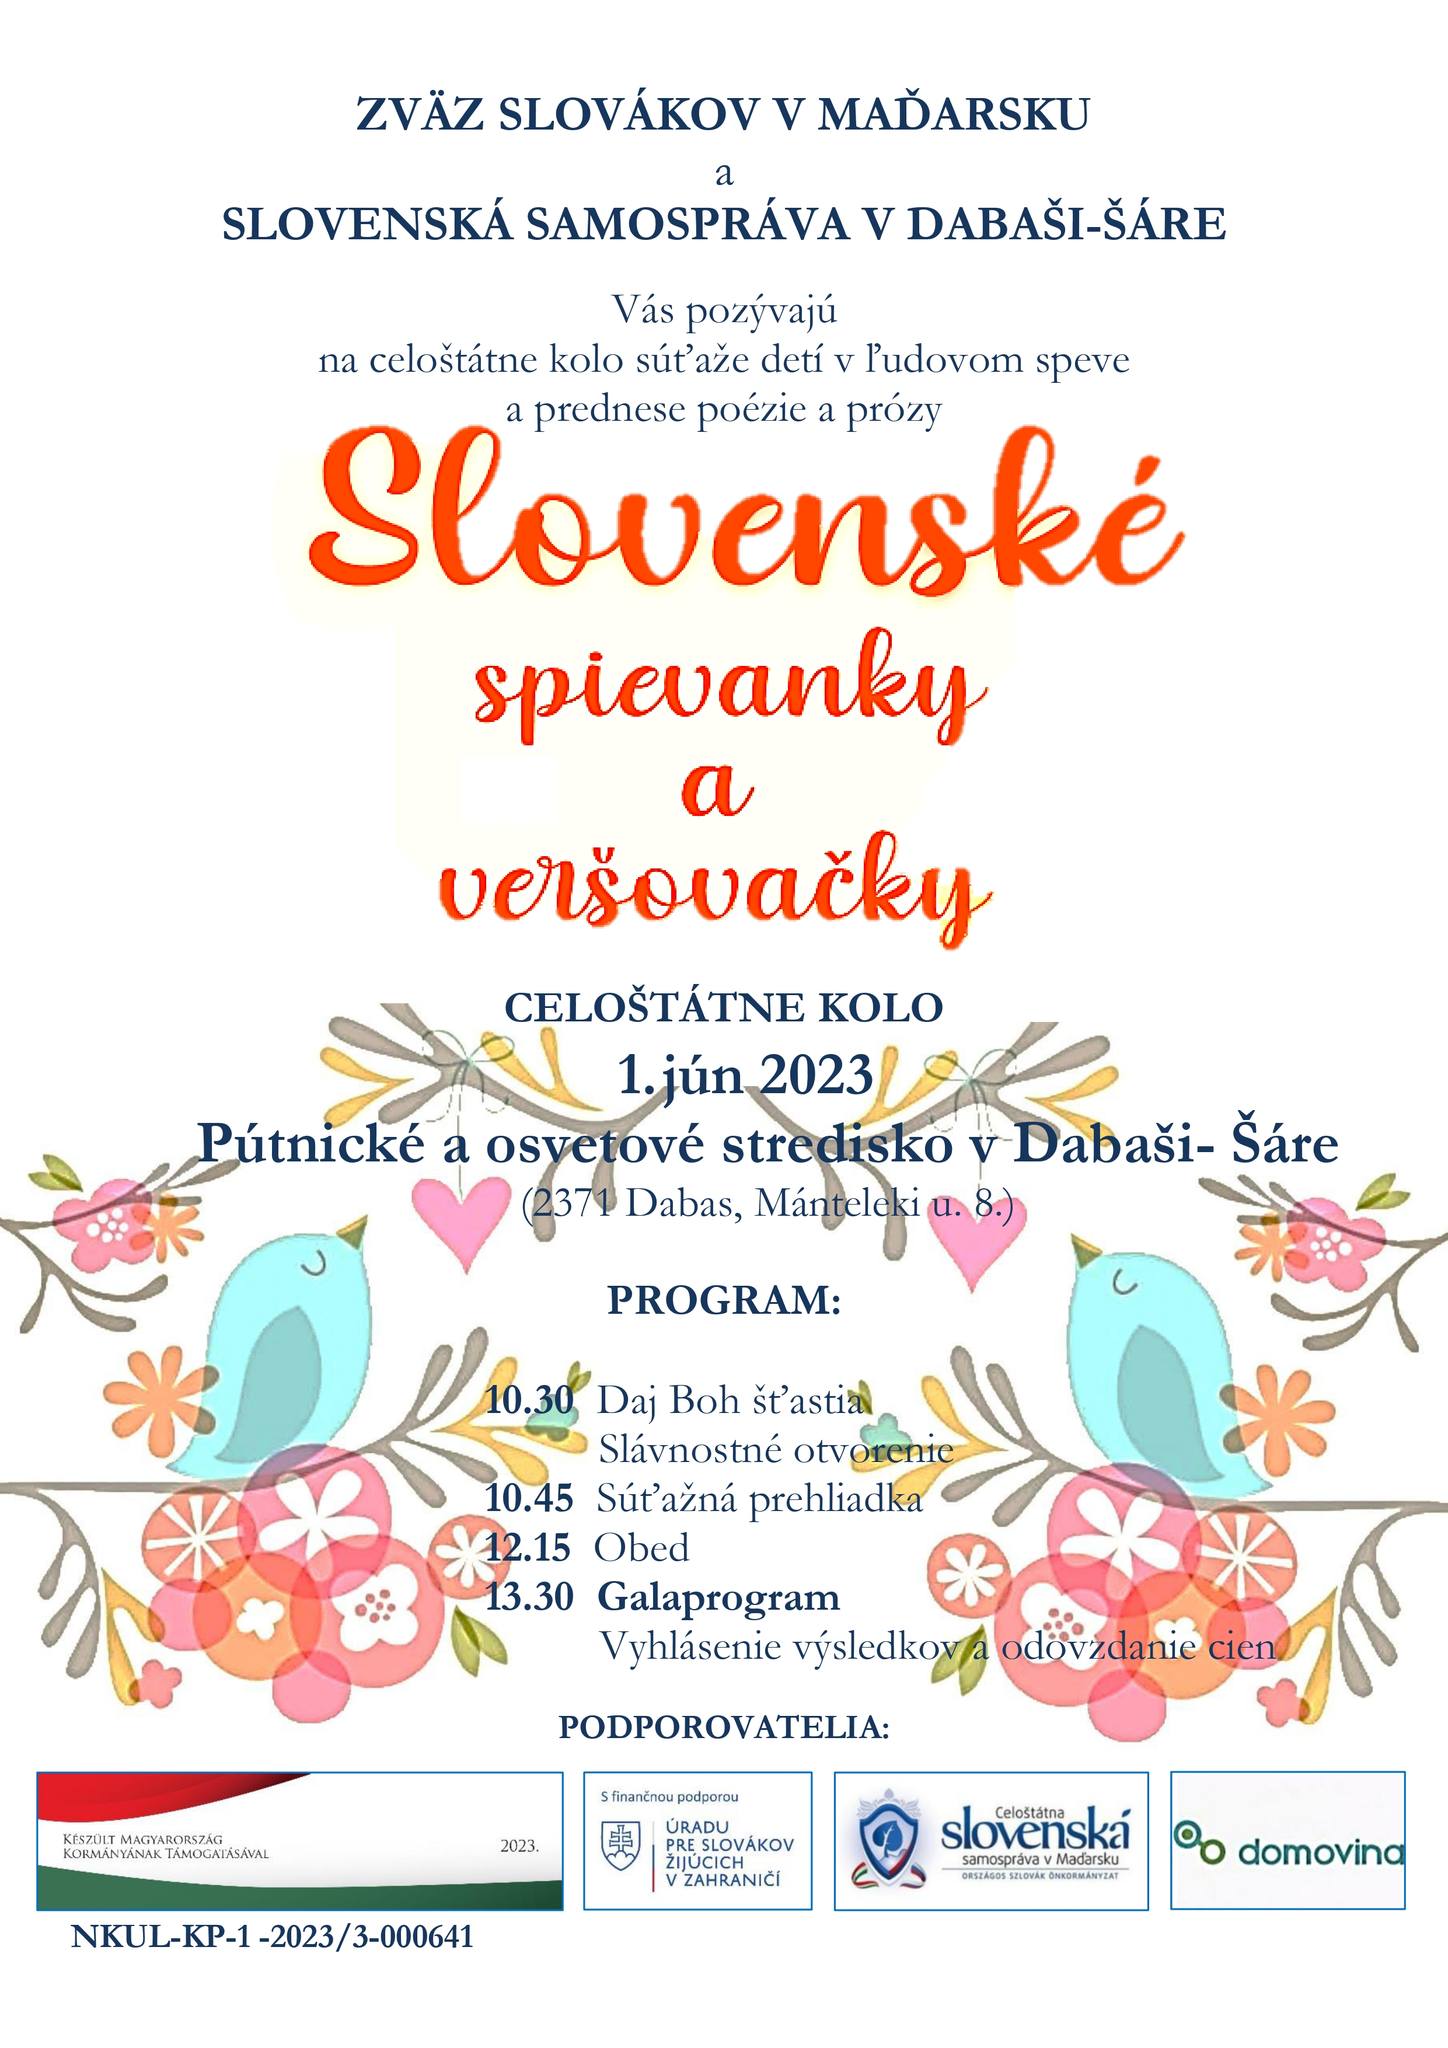 Slovenské spievanky a veršovačky 2023 Dabaš-Šára - celoštátne kolo súťaže